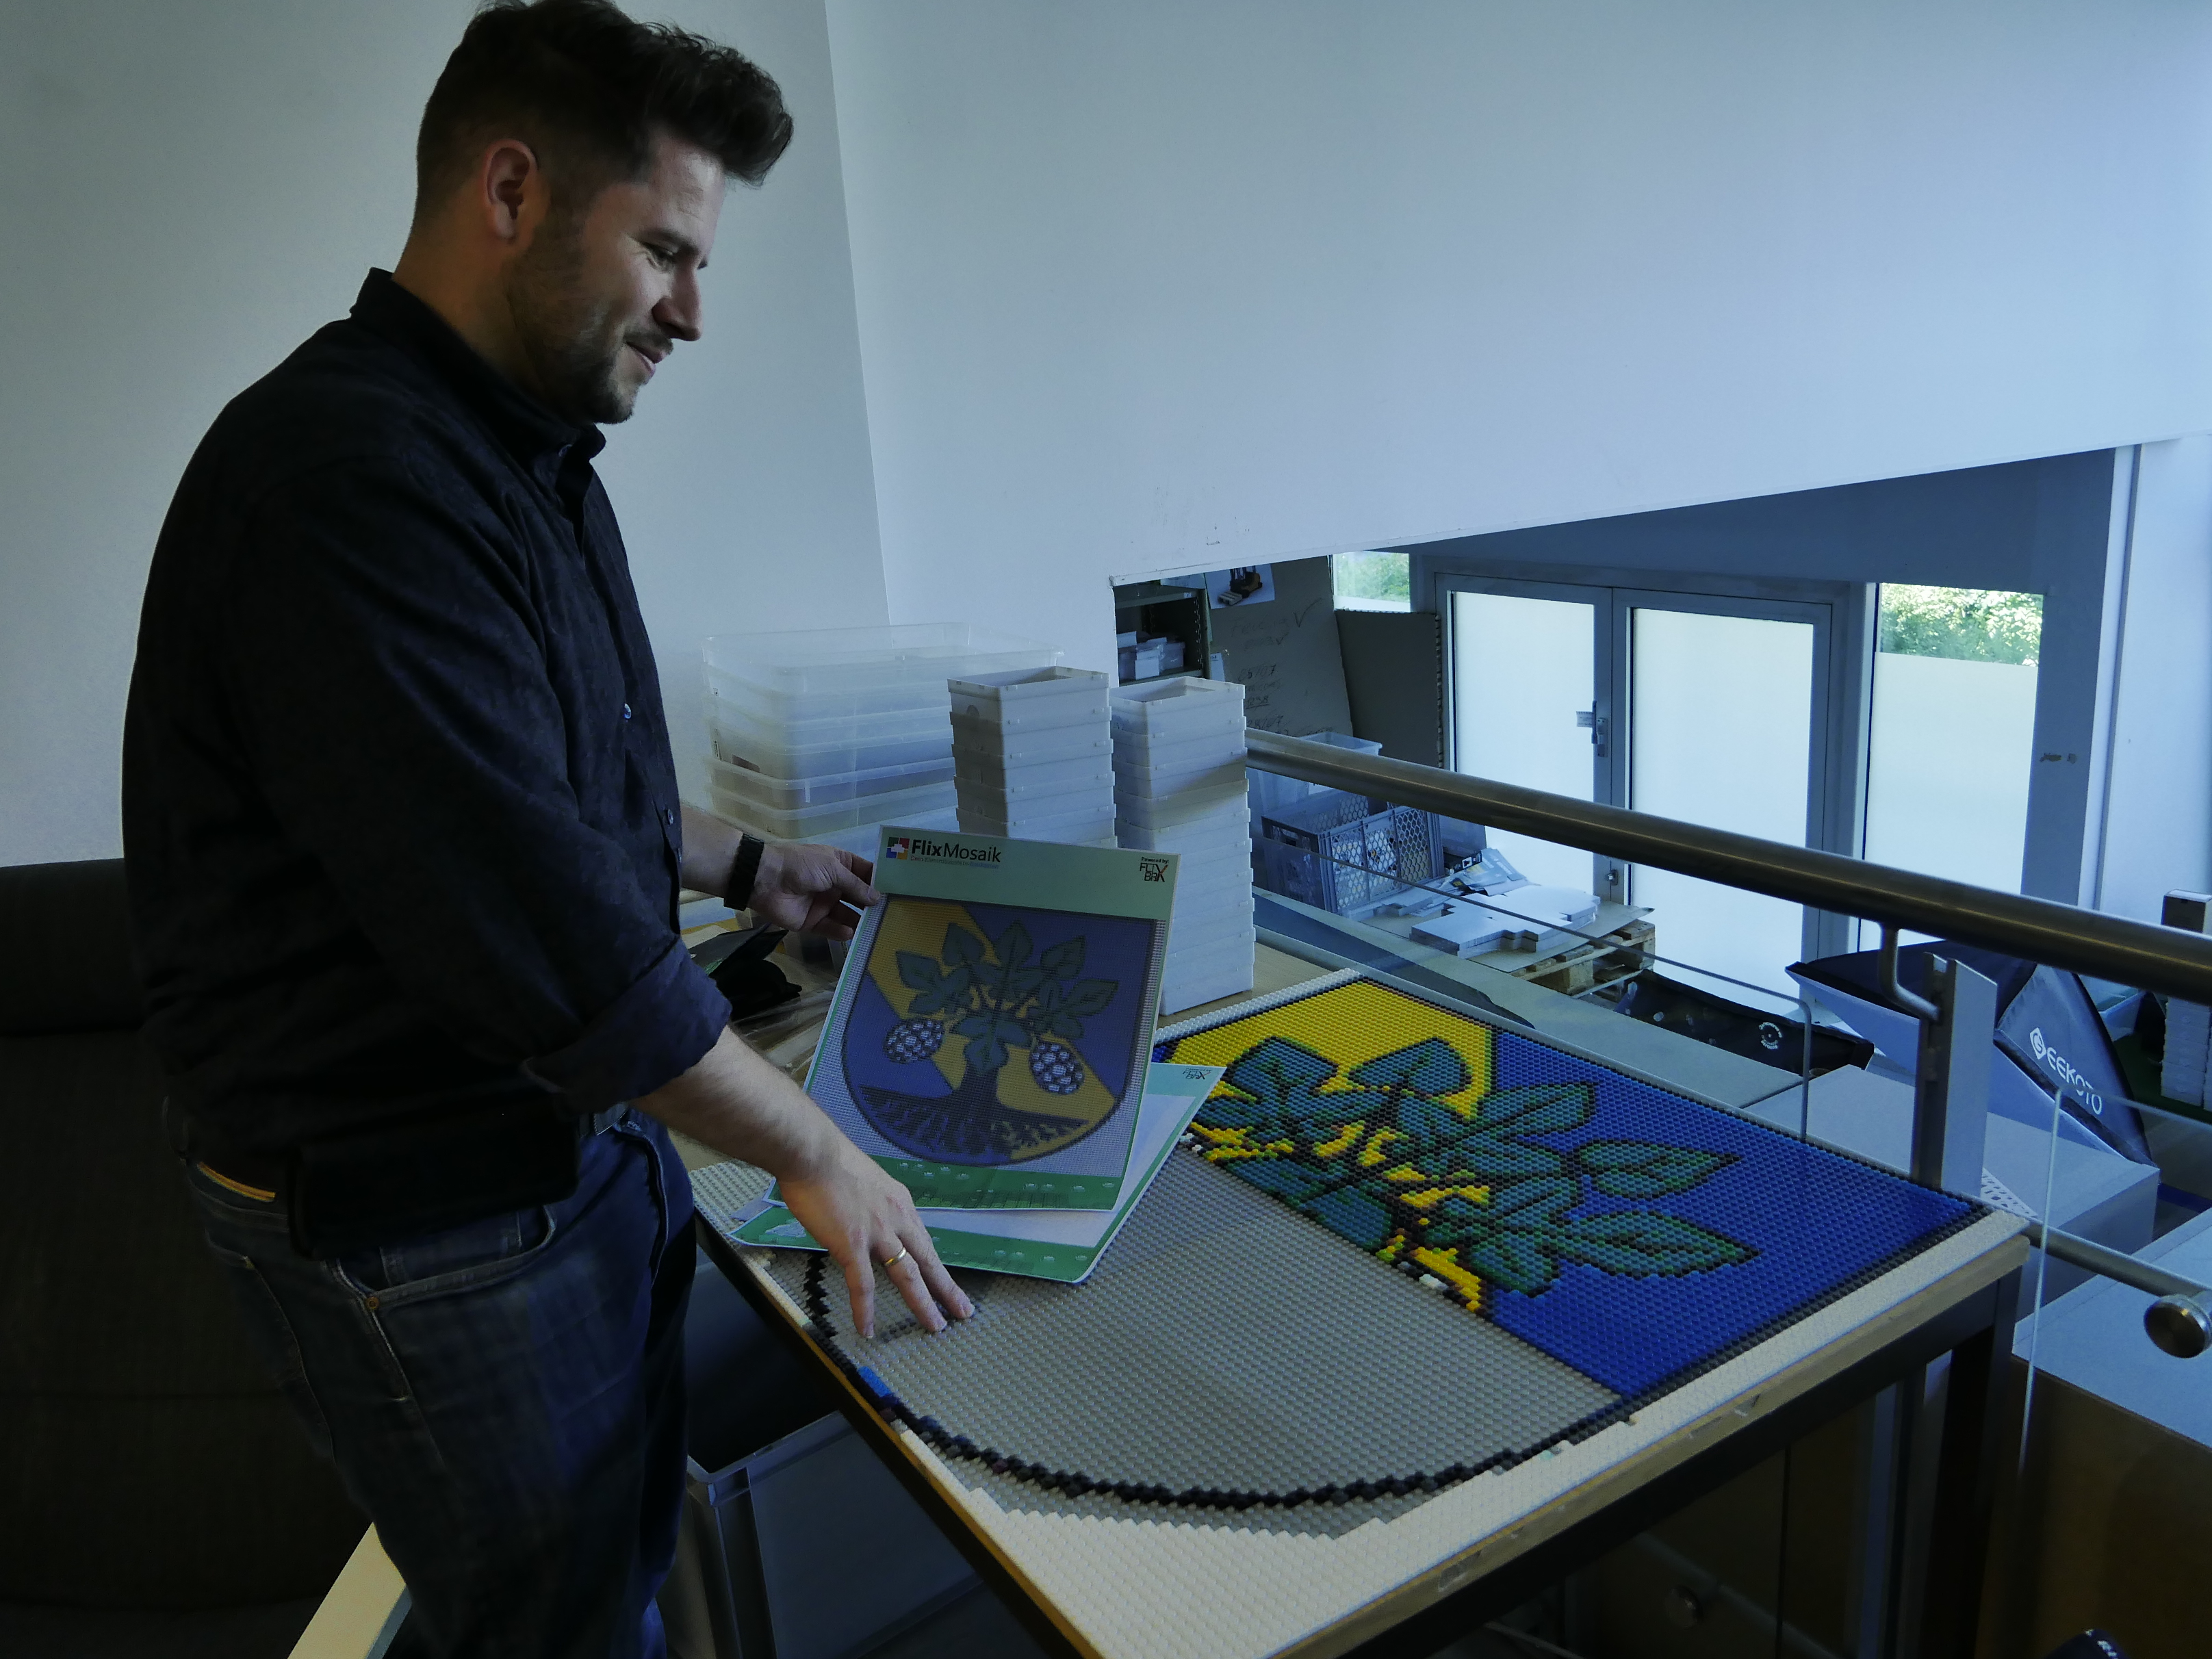 Sebastian Groth, Geschäftsführer von Flix-Brix, zeigt das Wappen von Erkner, welches gerade aus kleinen Lego-Teilen in Form eines Mosaiks erstellt wird